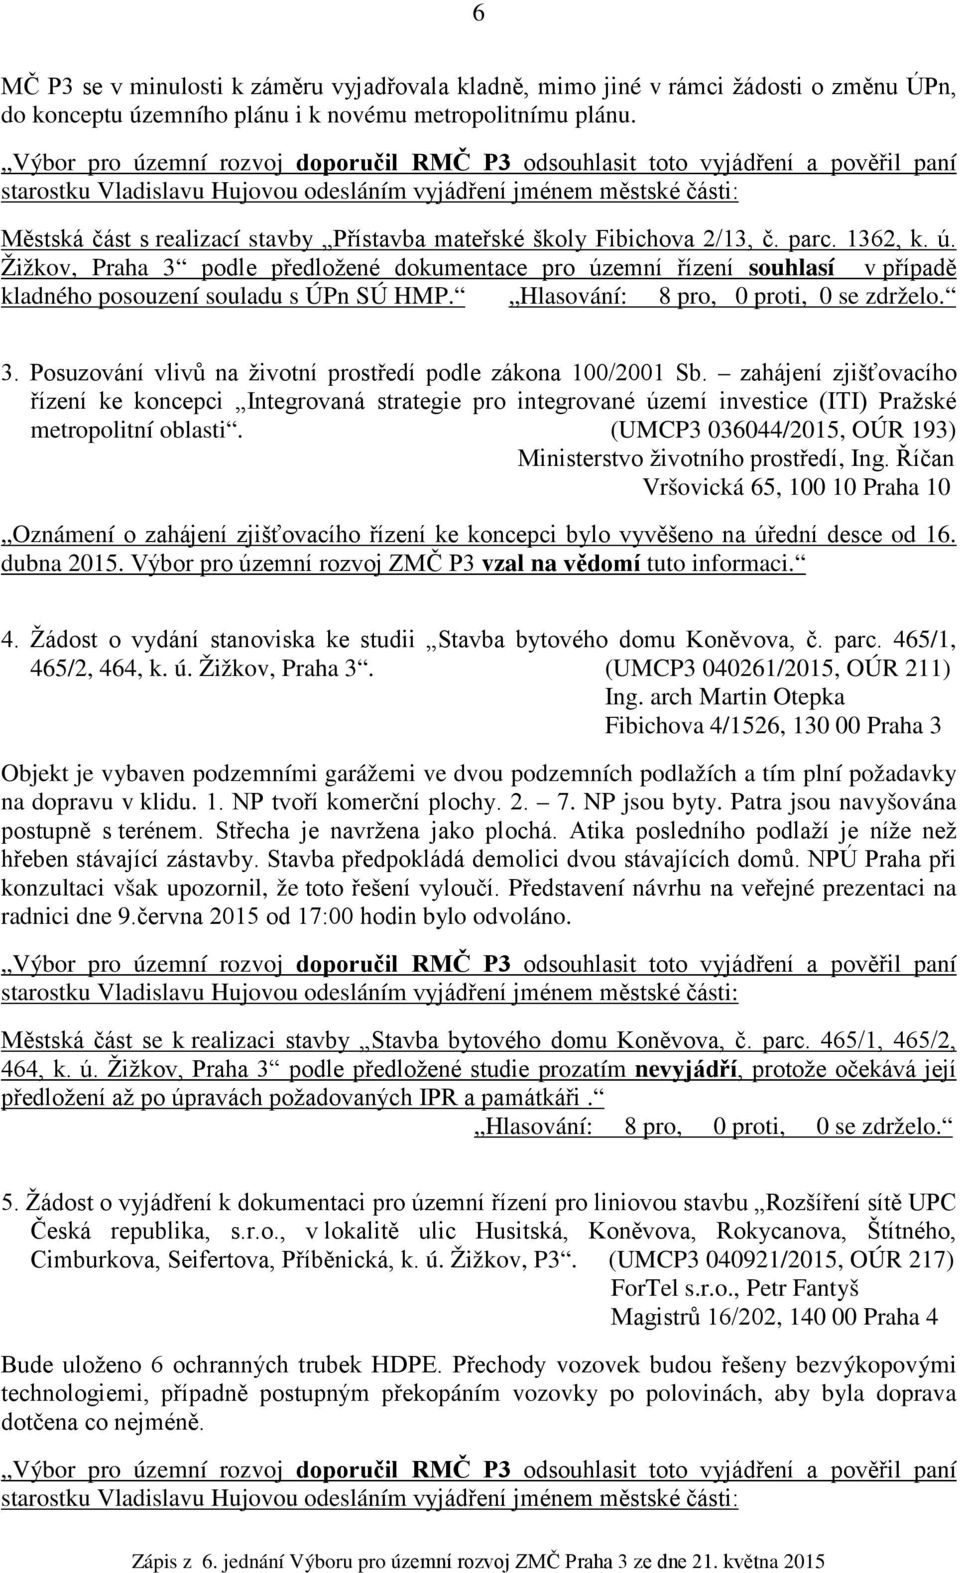 mateřské školy Fibichova 2/13, č. parc. 1362, k. ú. Žižkov, Praha 3 podle předložené dokumentace pro územní řízení souhlasí v případě kladného posouzení souladu s ÚPn SÚ HMP.